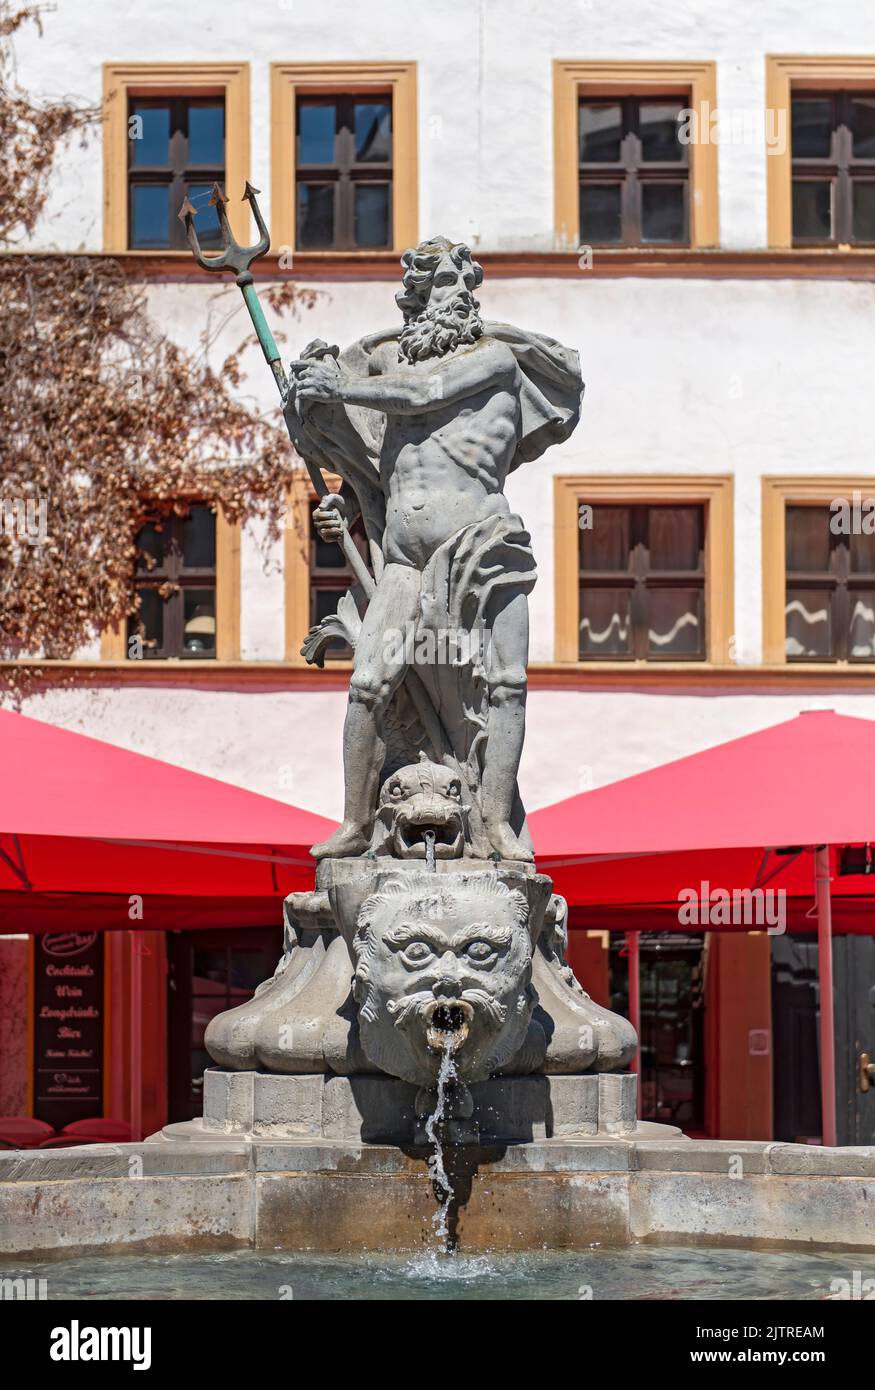 Fontaine de Neptune, place du bas marché (Untermarkt), Görlitz (Goerlitz), Allemagne Banque D'Images